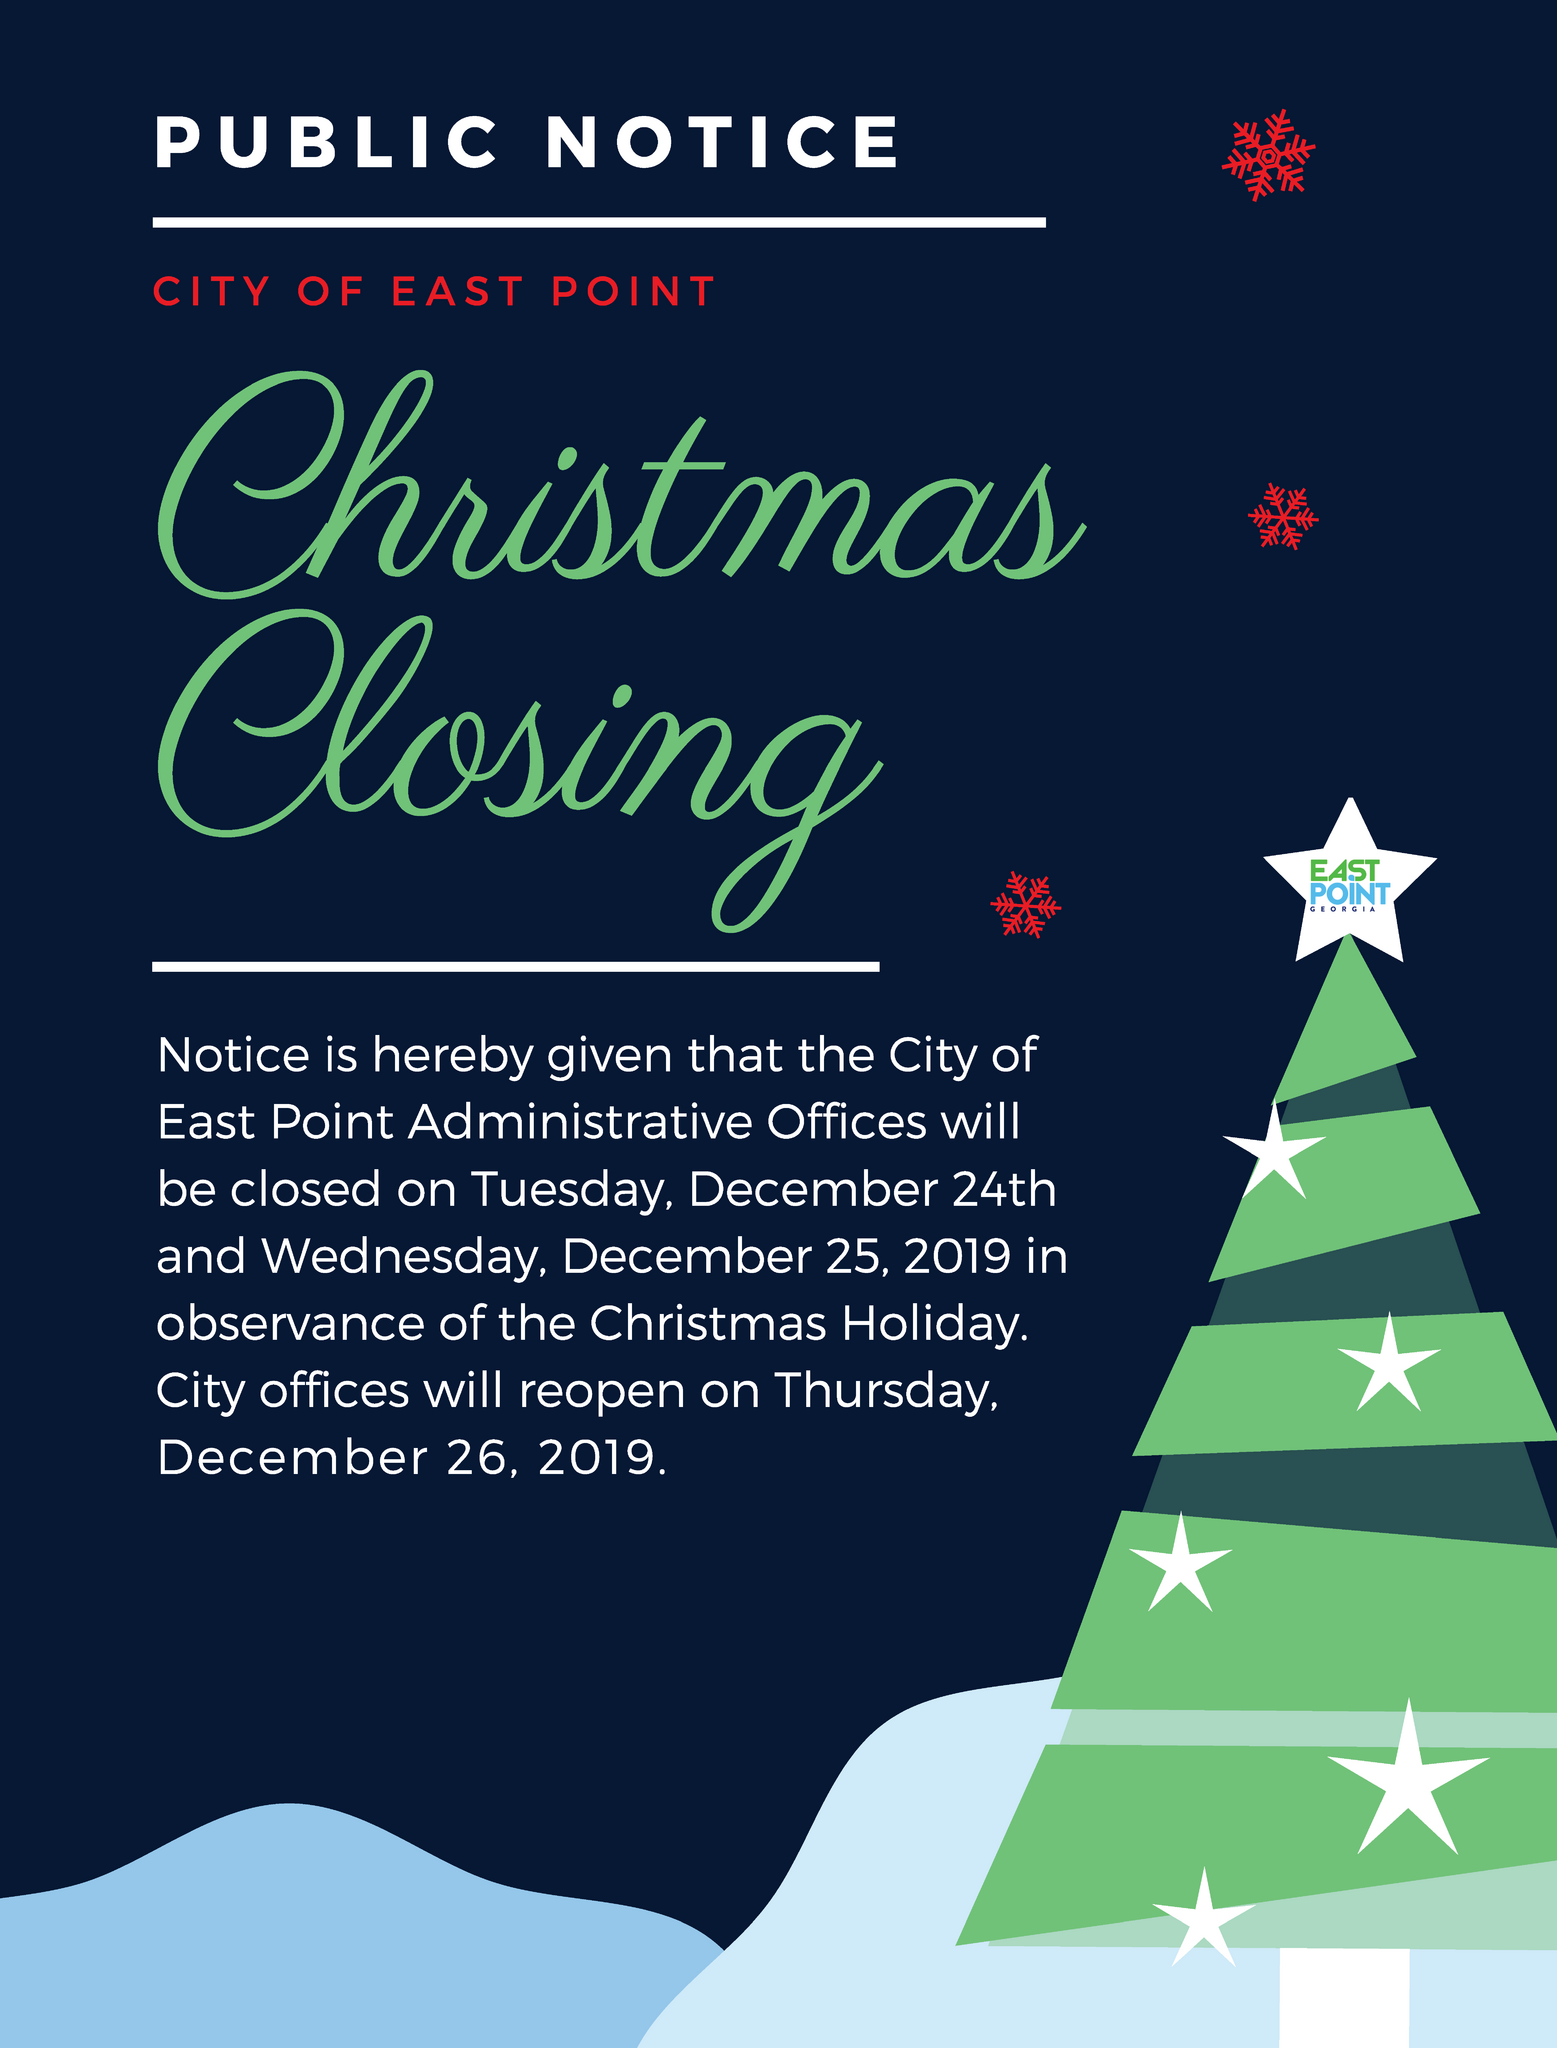 holiday-closing-announcement-city-of-east-point-nextdoor-nextdoor